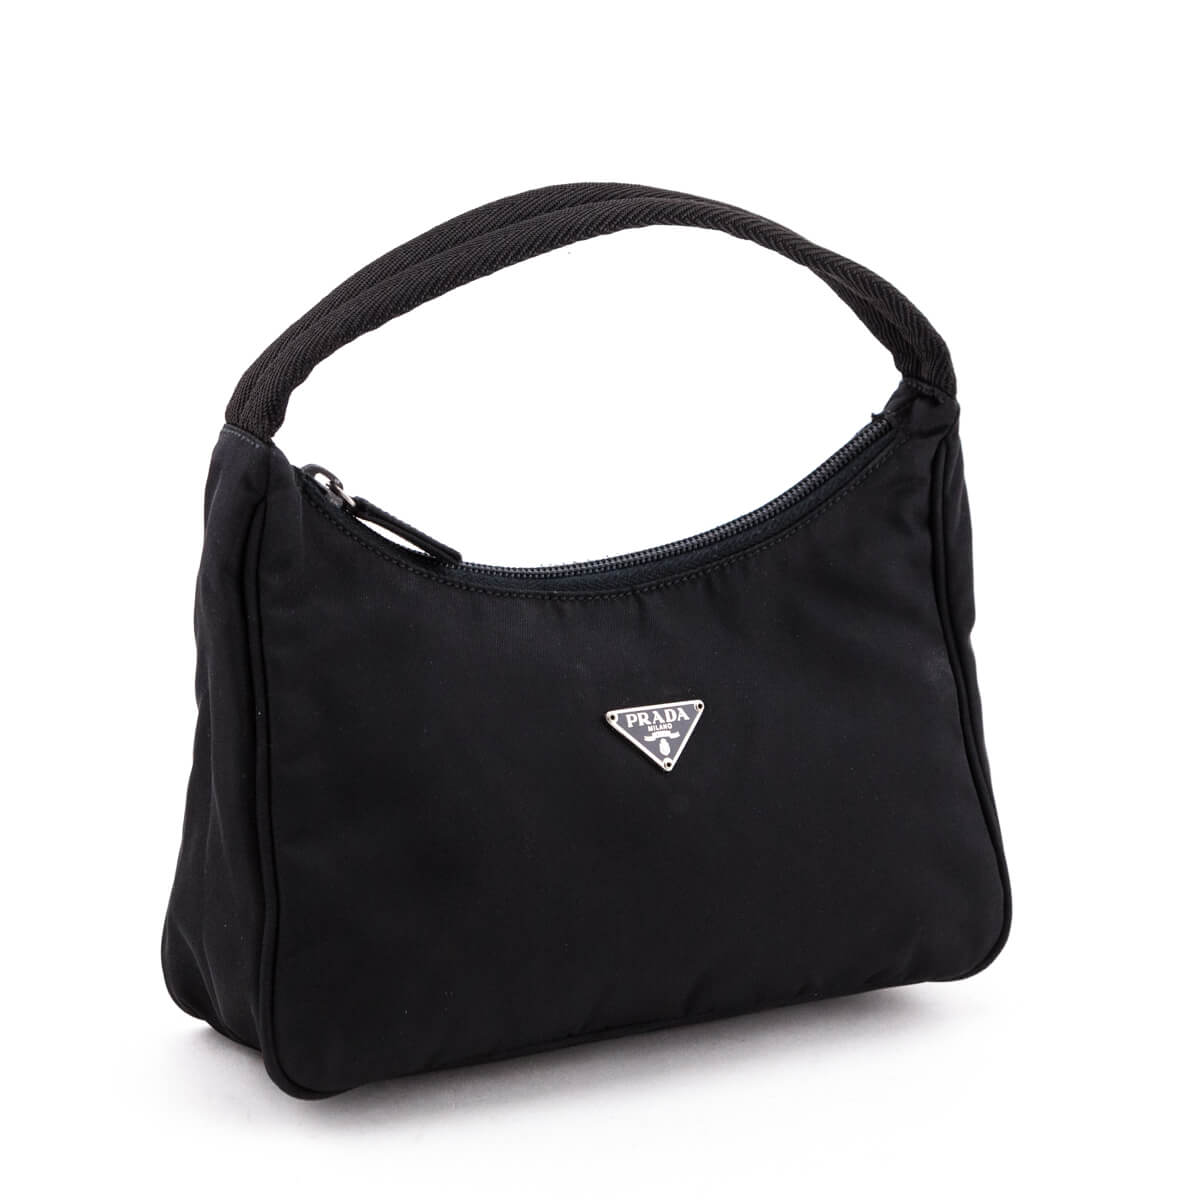 Prada Black Nylon Vintage Mini Bag - Preloved Prada Handbags Canada